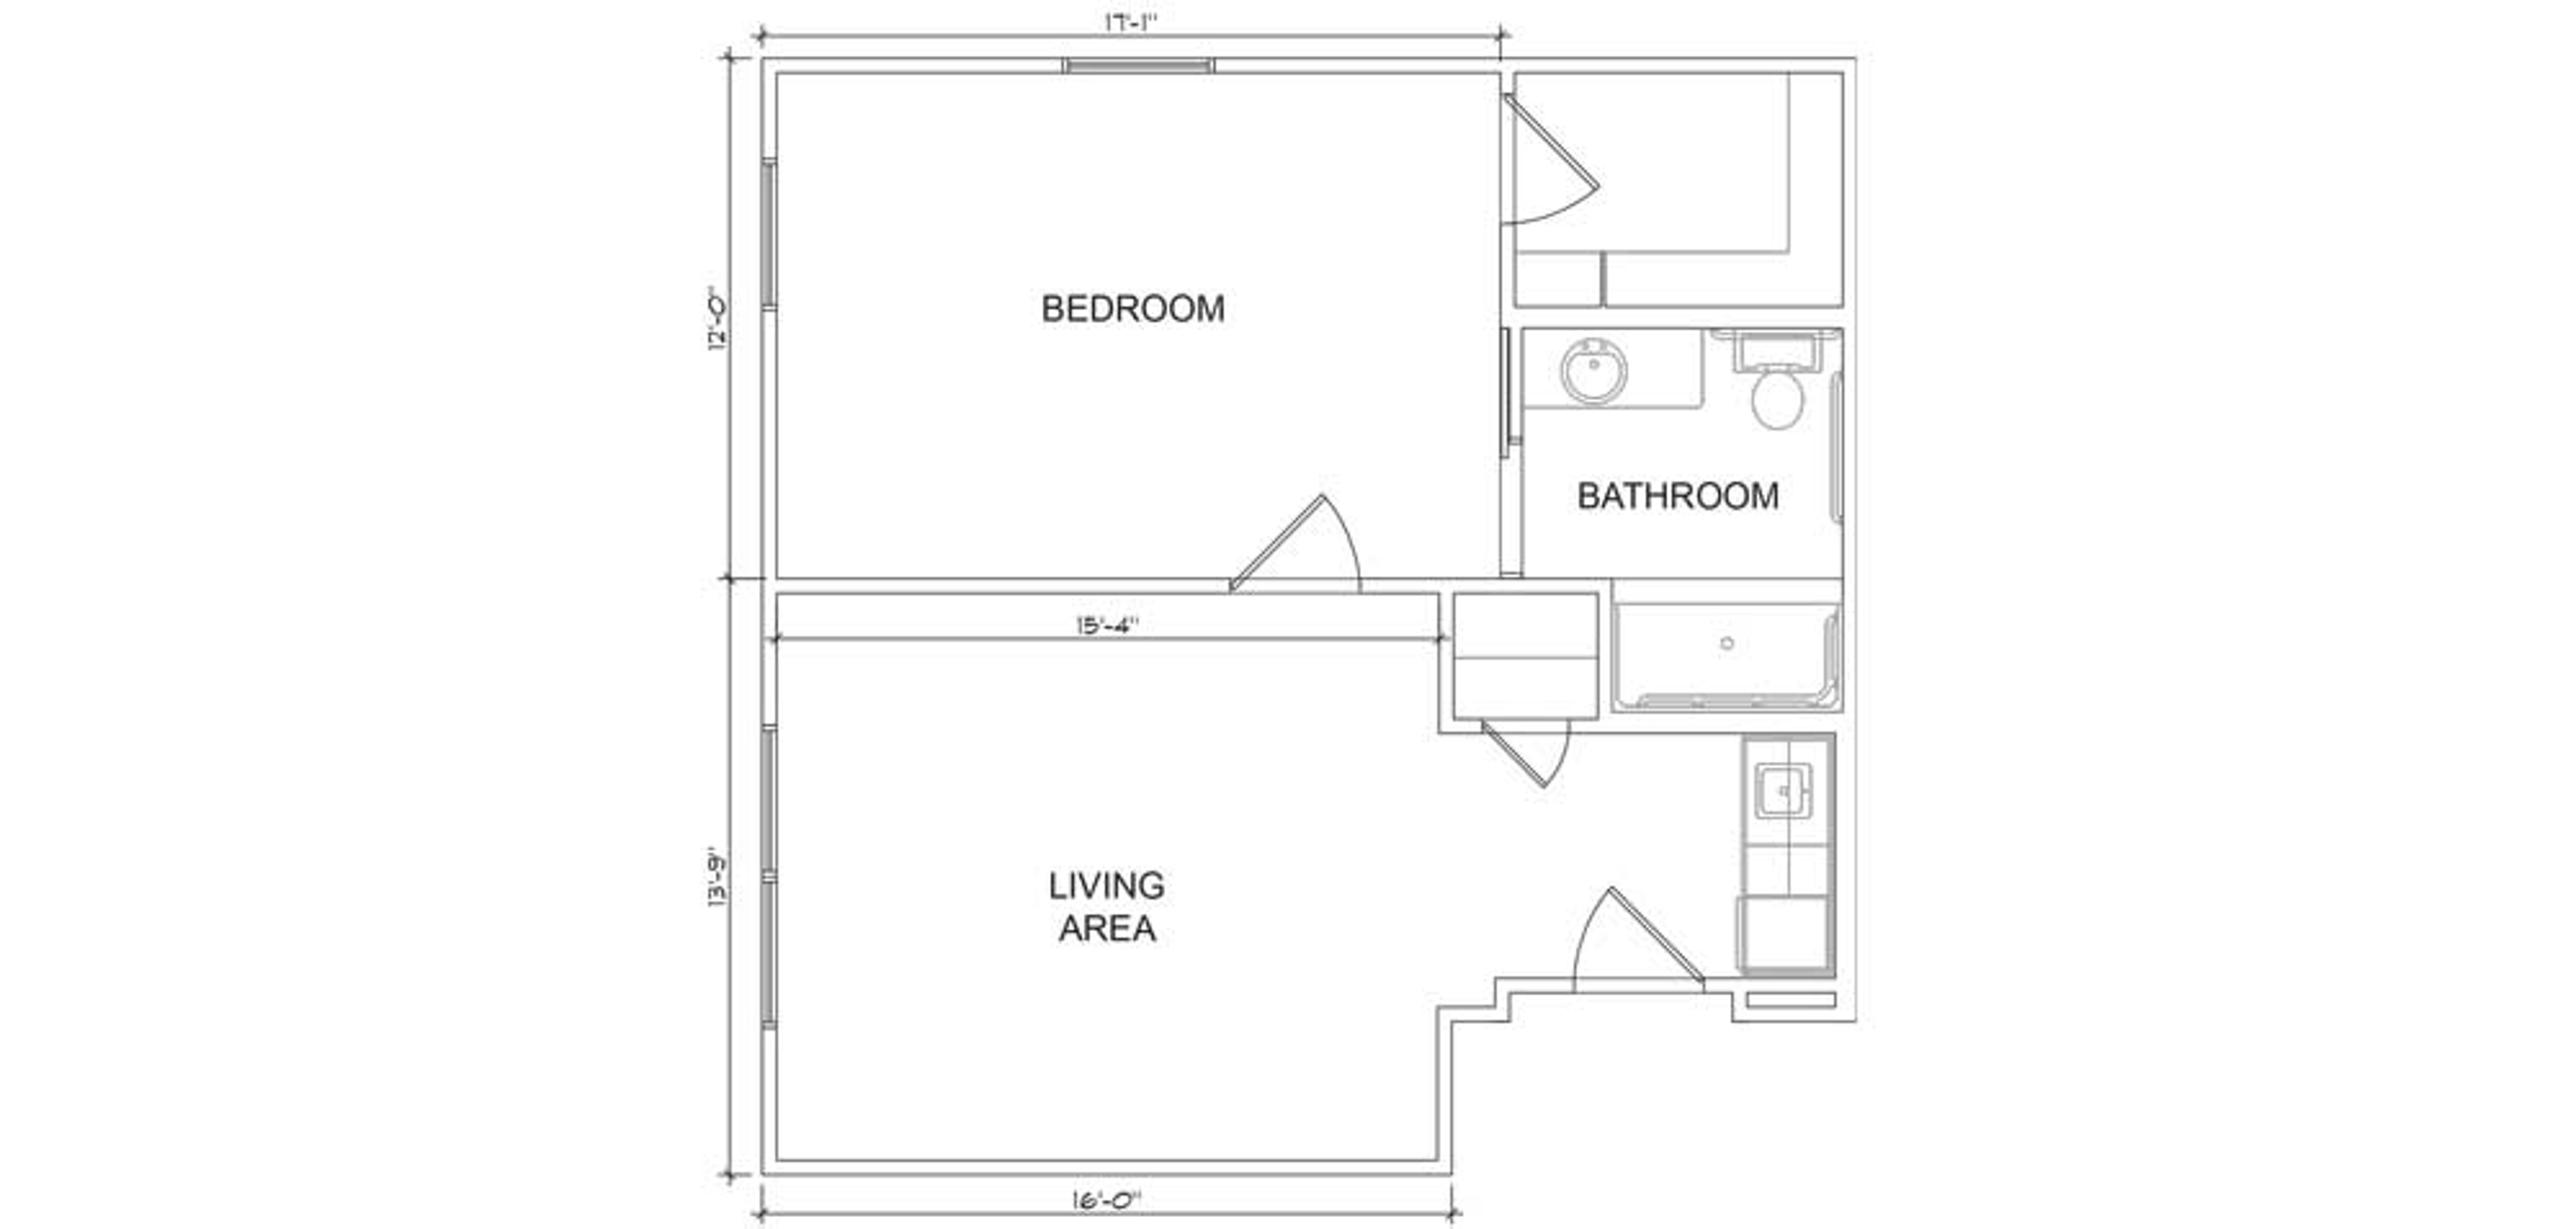 Floorplan - Azalea Trails - 1B 1B Luxury Assisted Living